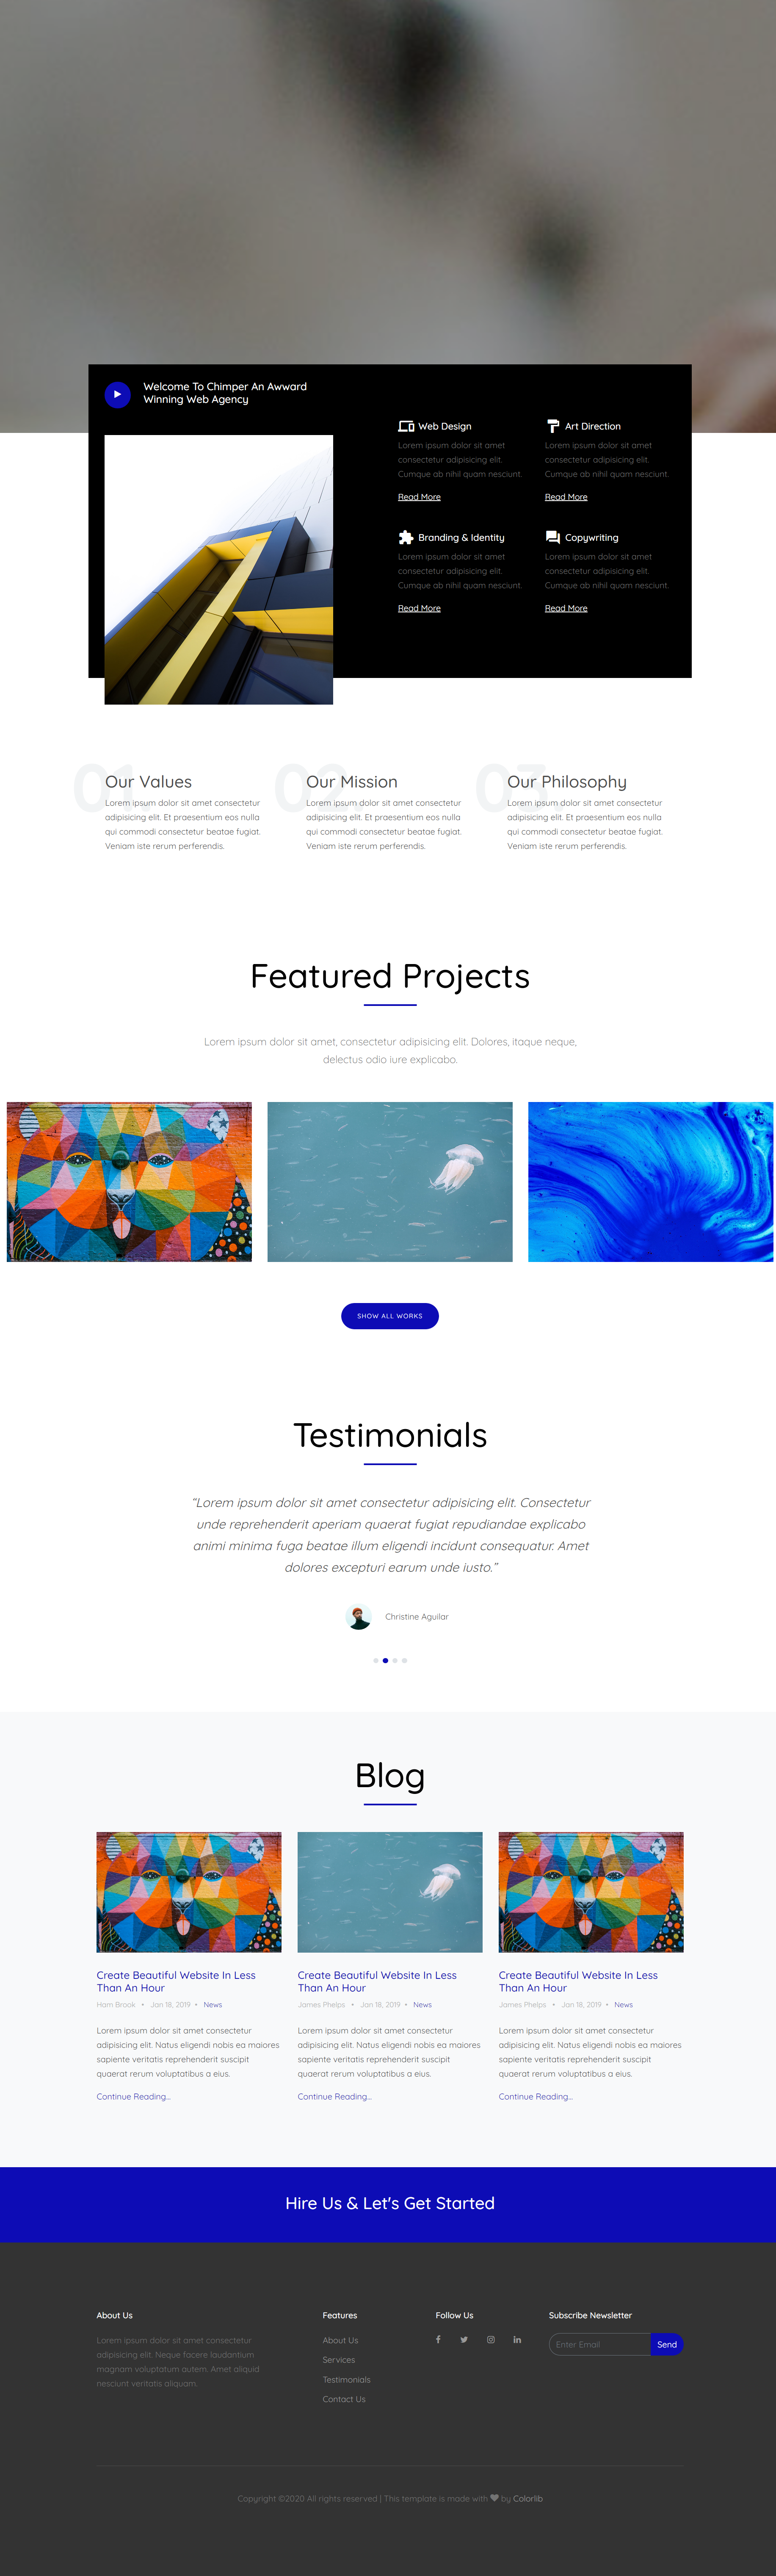 蓝色简洁风格响应式项目动态展示网页模板